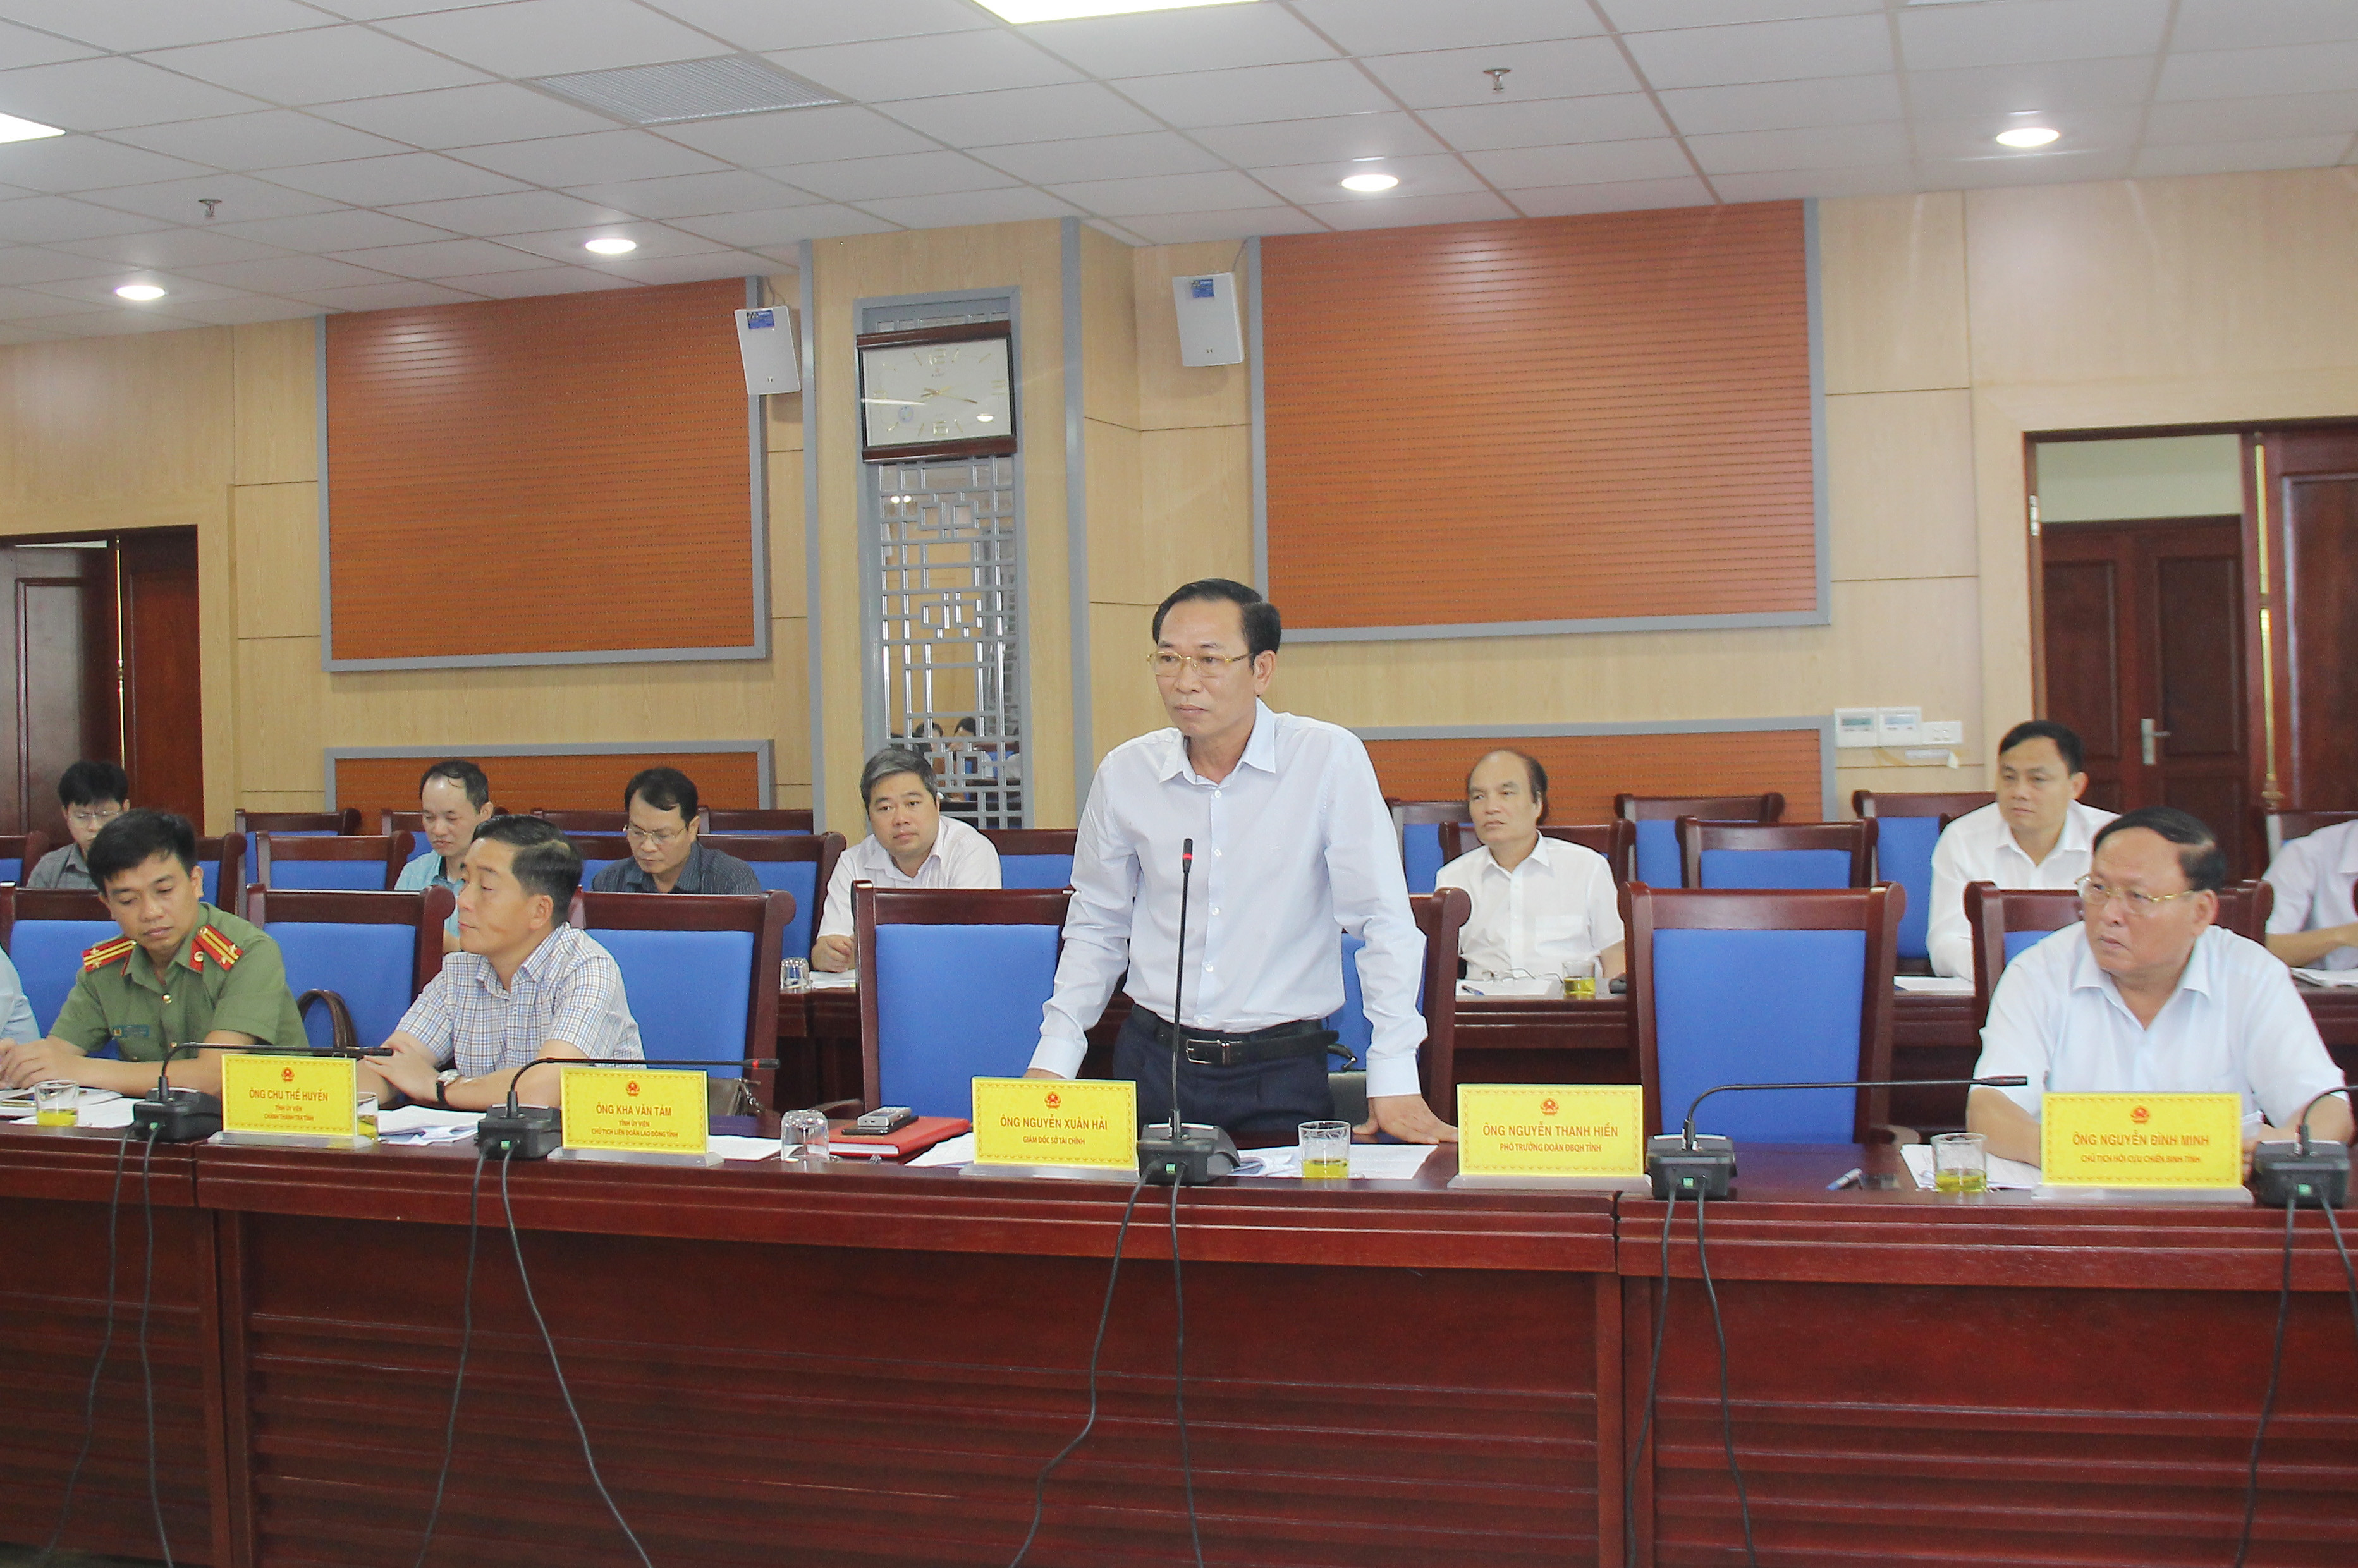 Đồng chí Nguyễn Xuân Hải - Giám đốc Sở Tài chính, thành viên Ủy ban bầu cử tỉnh cho ý kiến về 